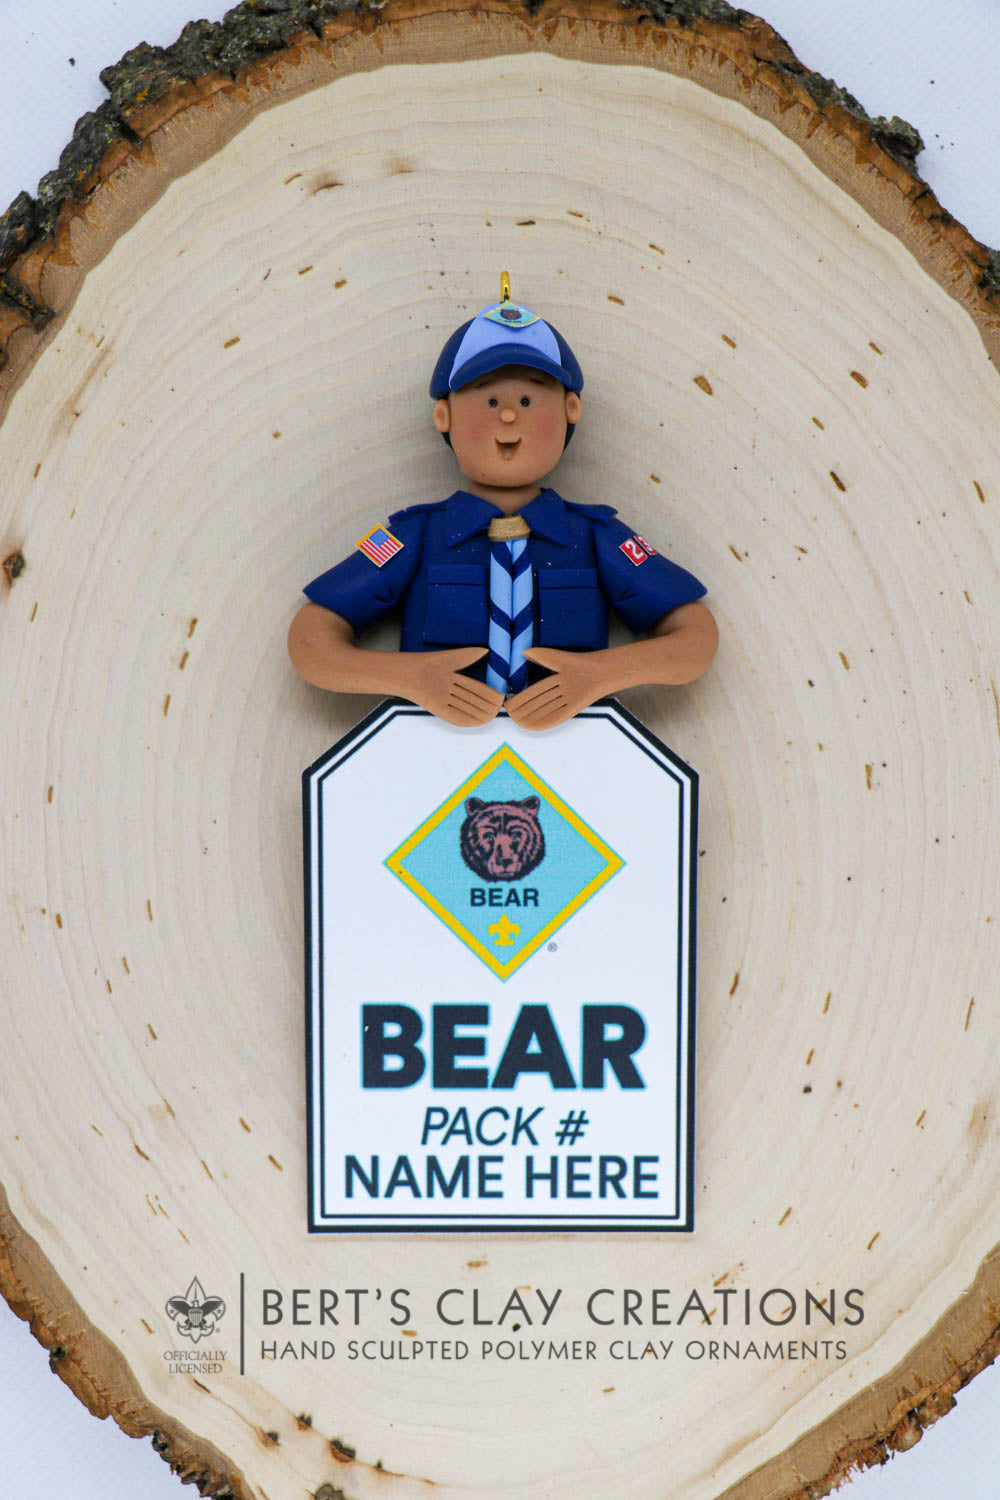 BSA - Bear Scout Ornament (Bust Version) - Bert's Clay Creations